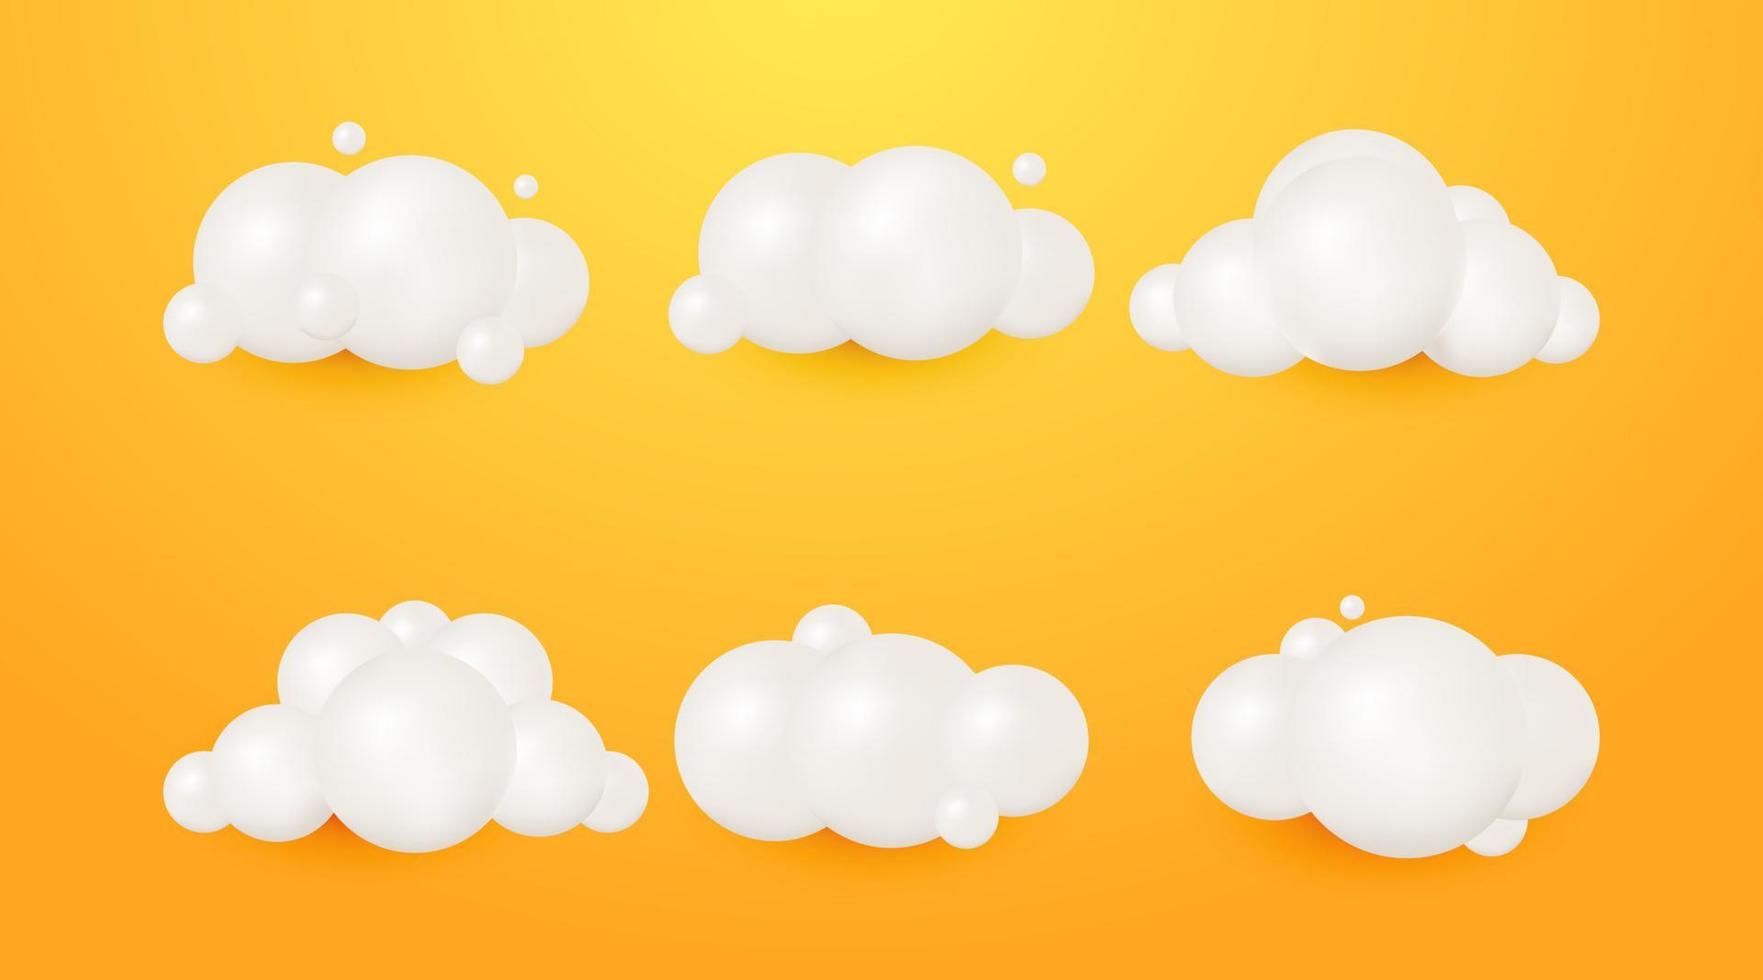 las nubes blancas 3d realistas representan una colección de iconos de dibujos animados redondos suaves aislados en un fondo amarillo vector